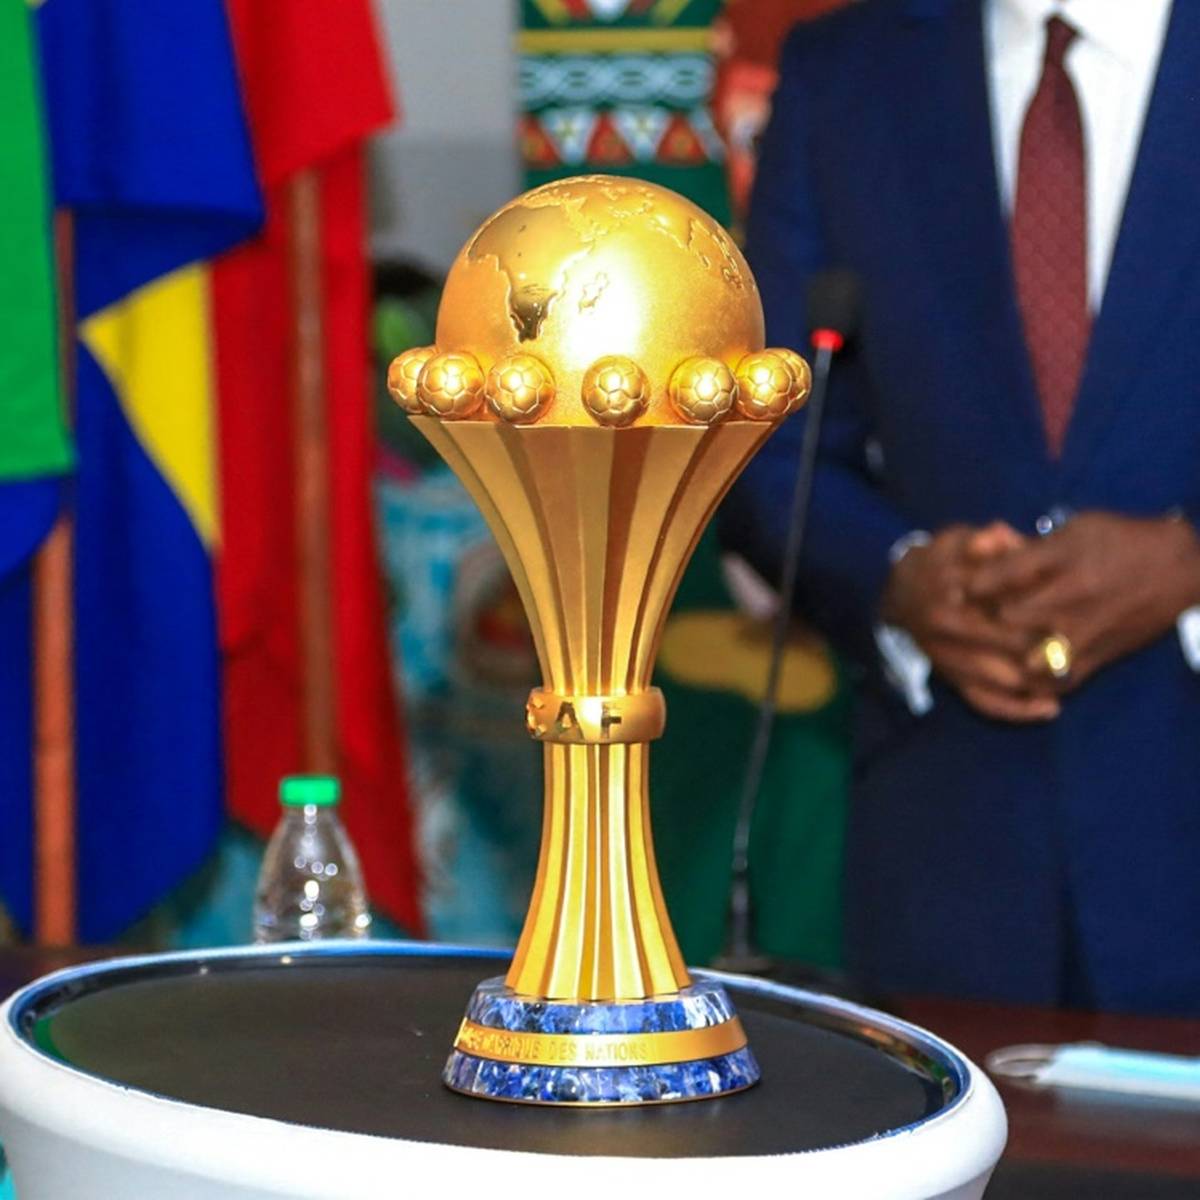 Sportdigital Fußball und OneFootball übertragen Africa-Cup